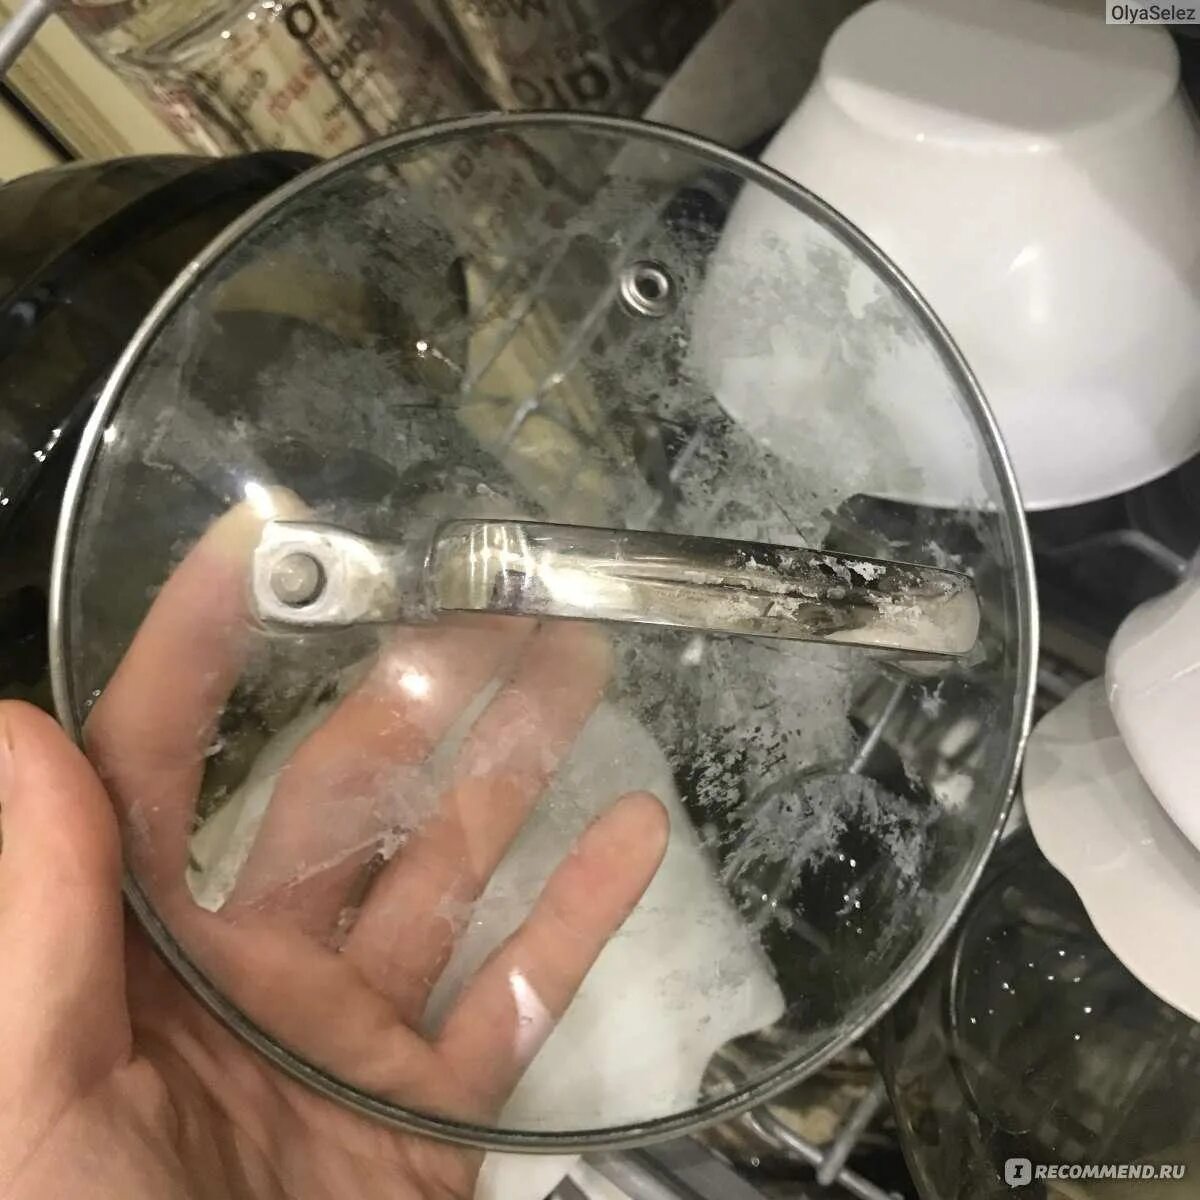 Налет на посуде после мытья. Белый налет на посуде и в посудомоечной машине. Налёт на посуде после посудомойки. После посудомойки посуда в белом налете. Белый налет на стекле после посудомойки.